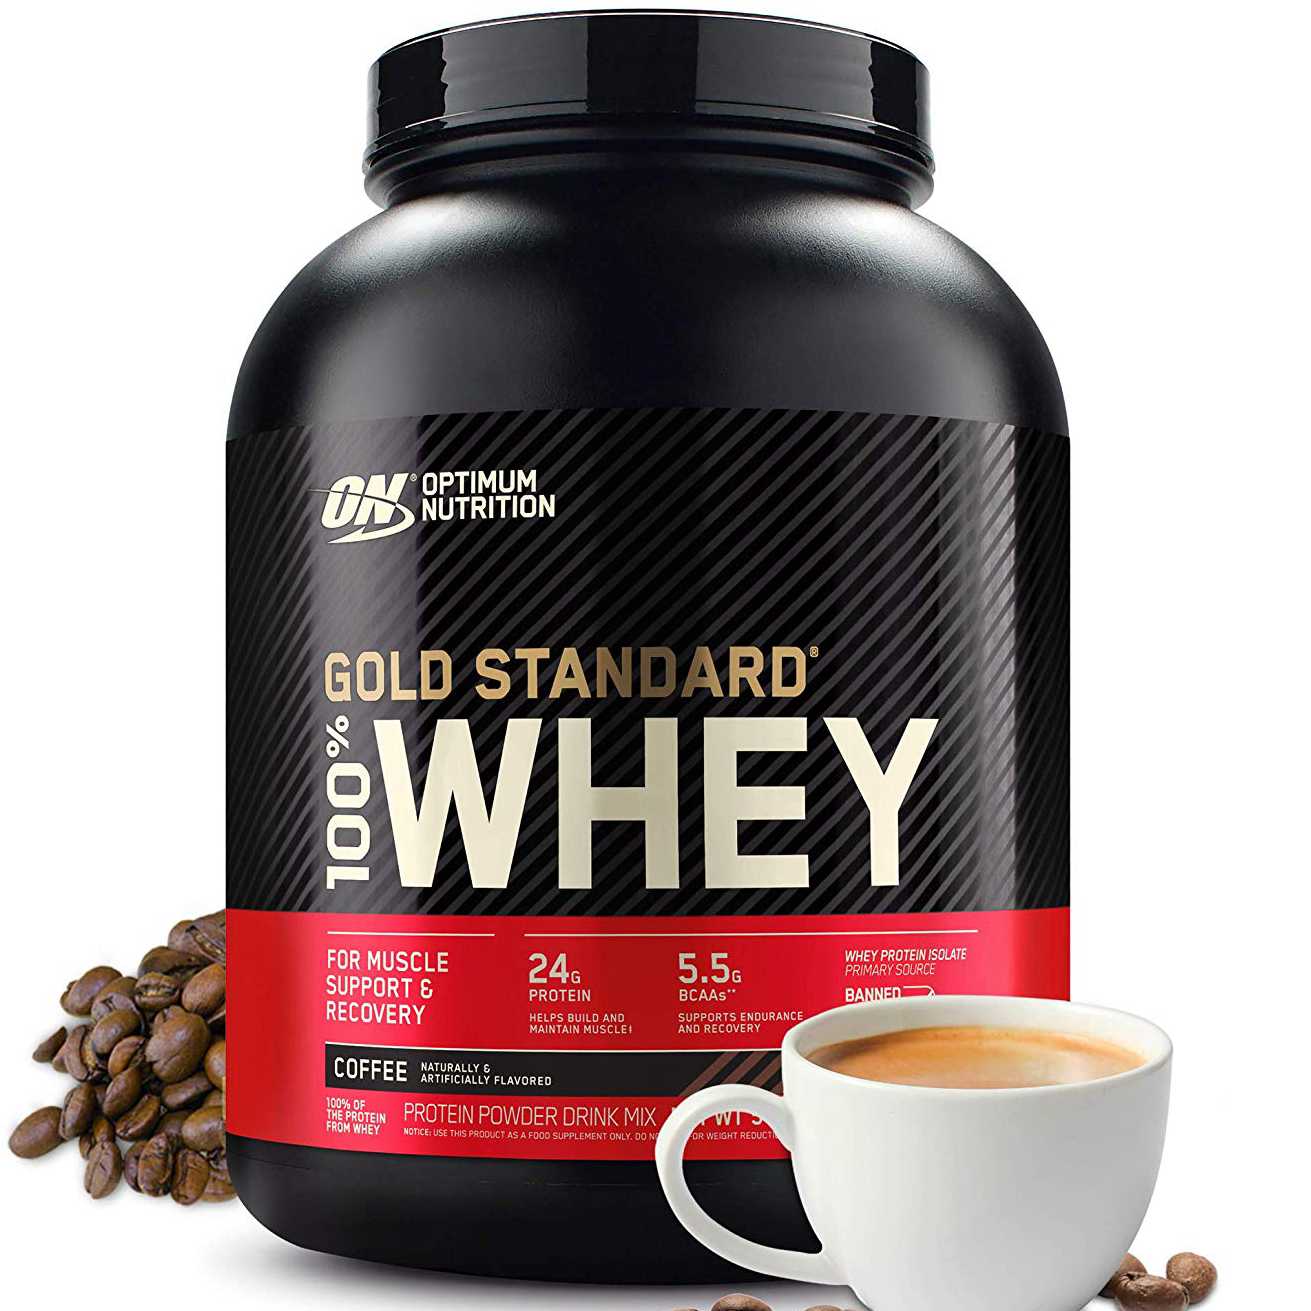 Состав протеина 100% whey gold standard от optimum nutrition